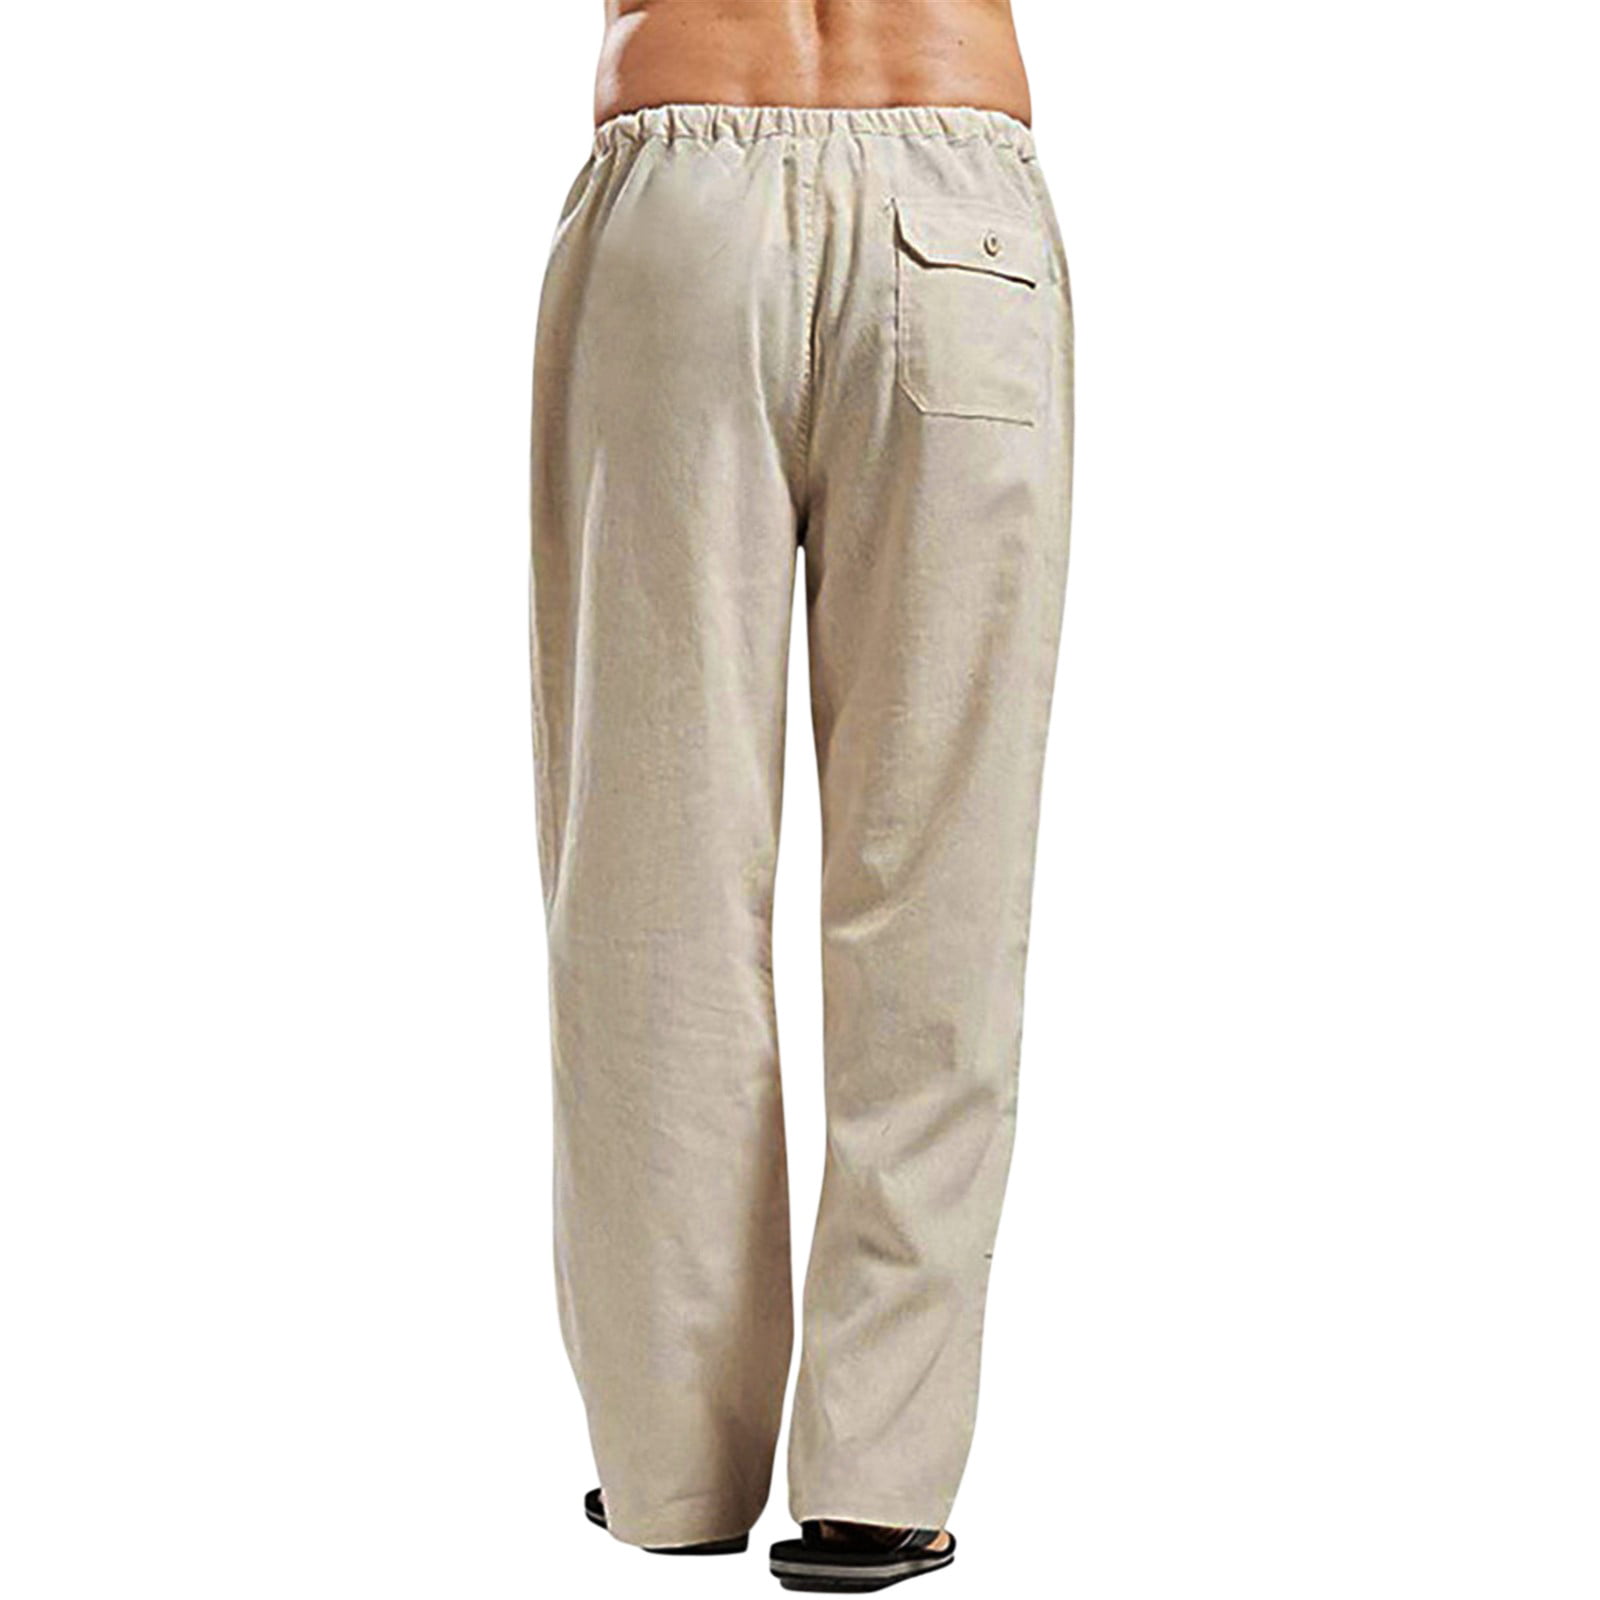 Gubotare Men's Sweatpants Mens Cargo Pants Casual Cotton Jogger Sweatpants  Elastic Waist Long Trousers,Khaki L 